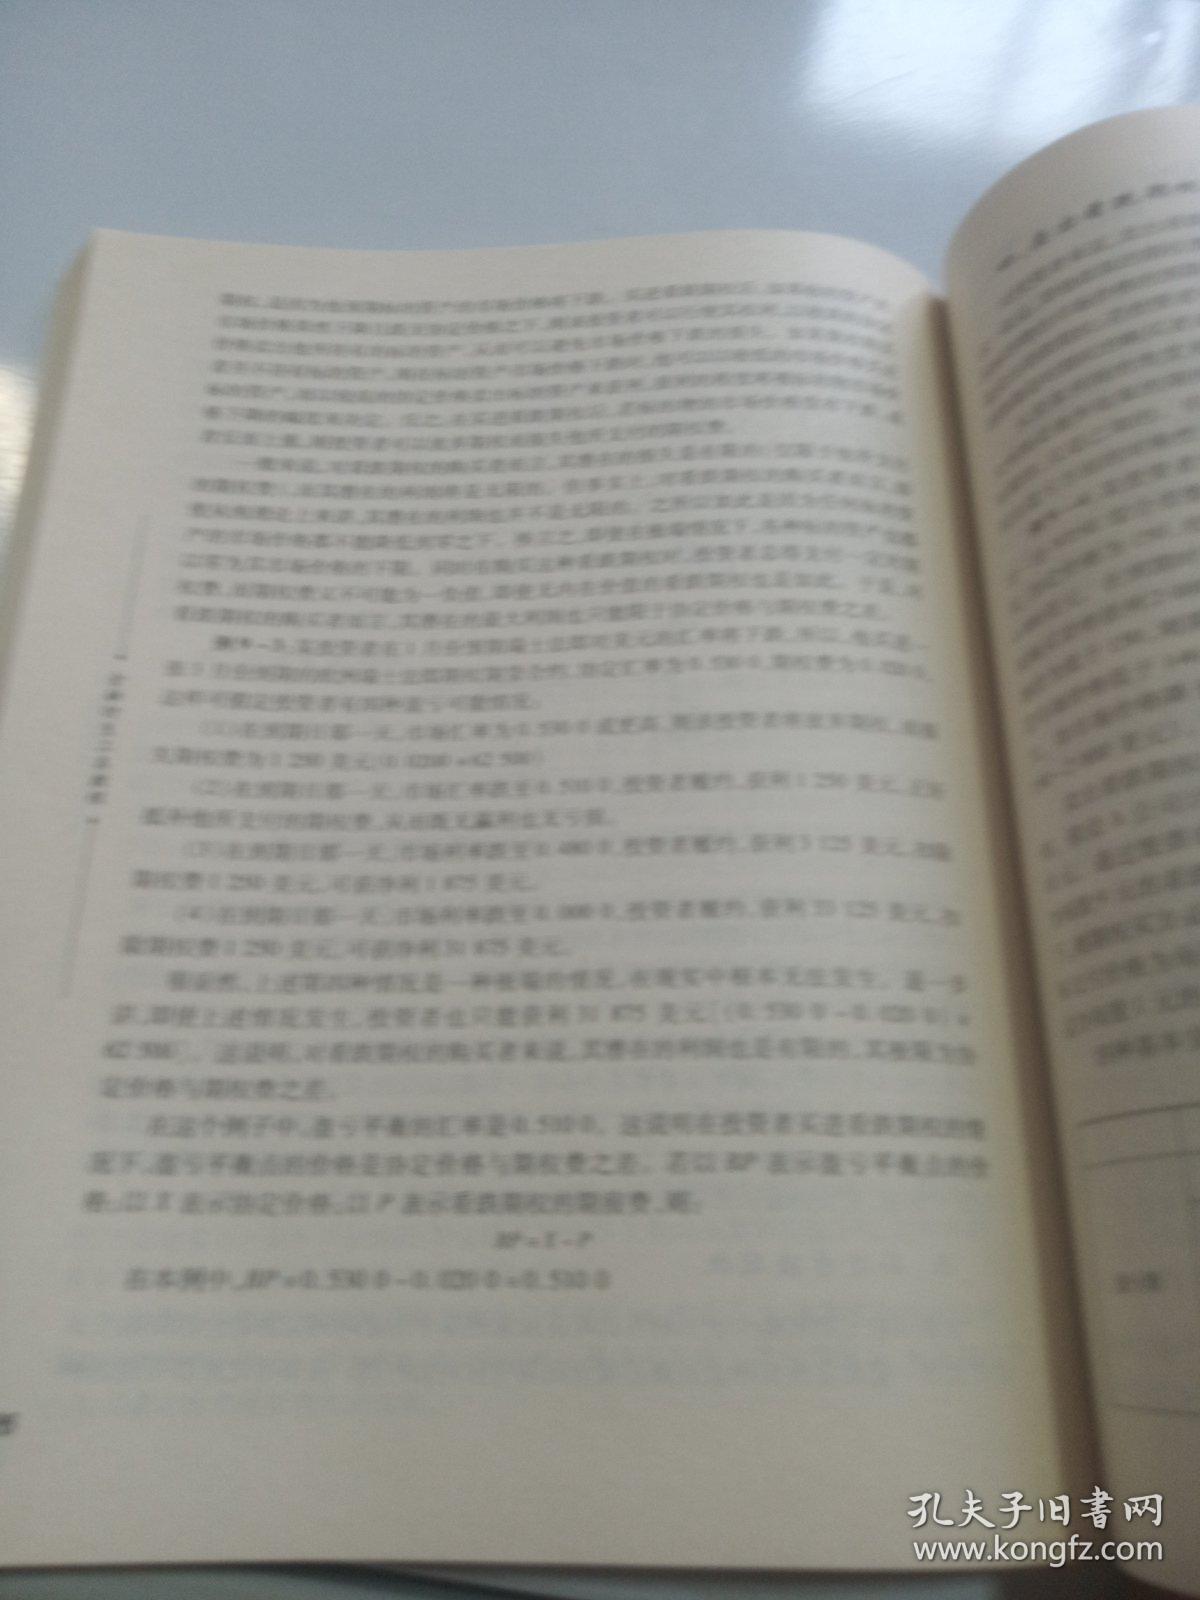 正版 金融衍生工具教程(修订第二版) 张元萍 首都经济